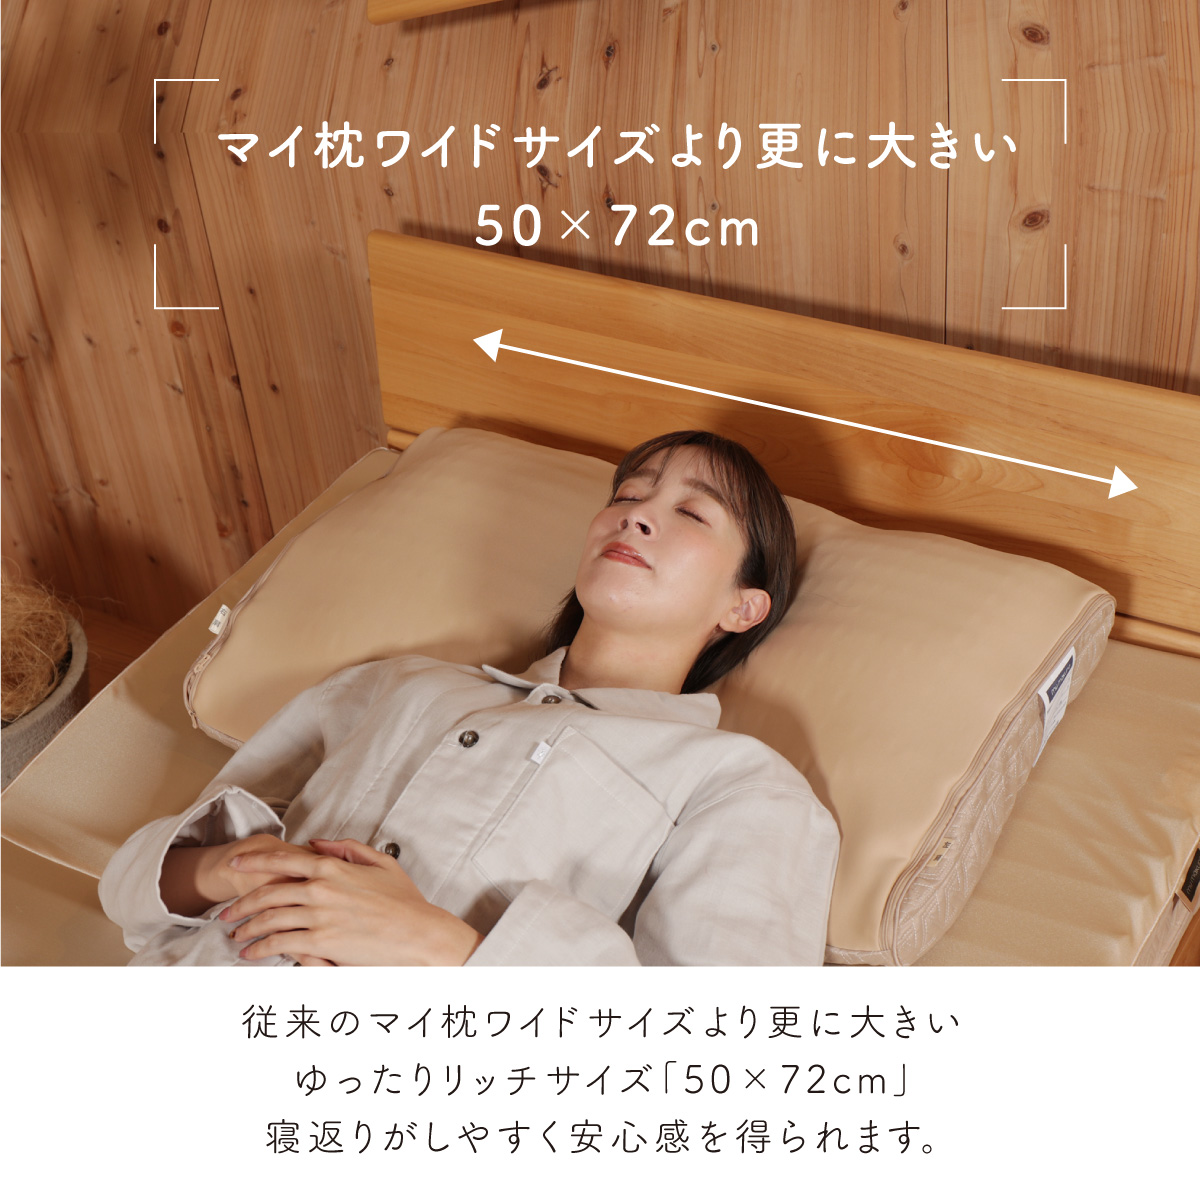 マイ枕ワイドサイズより更に大きい50×72cm